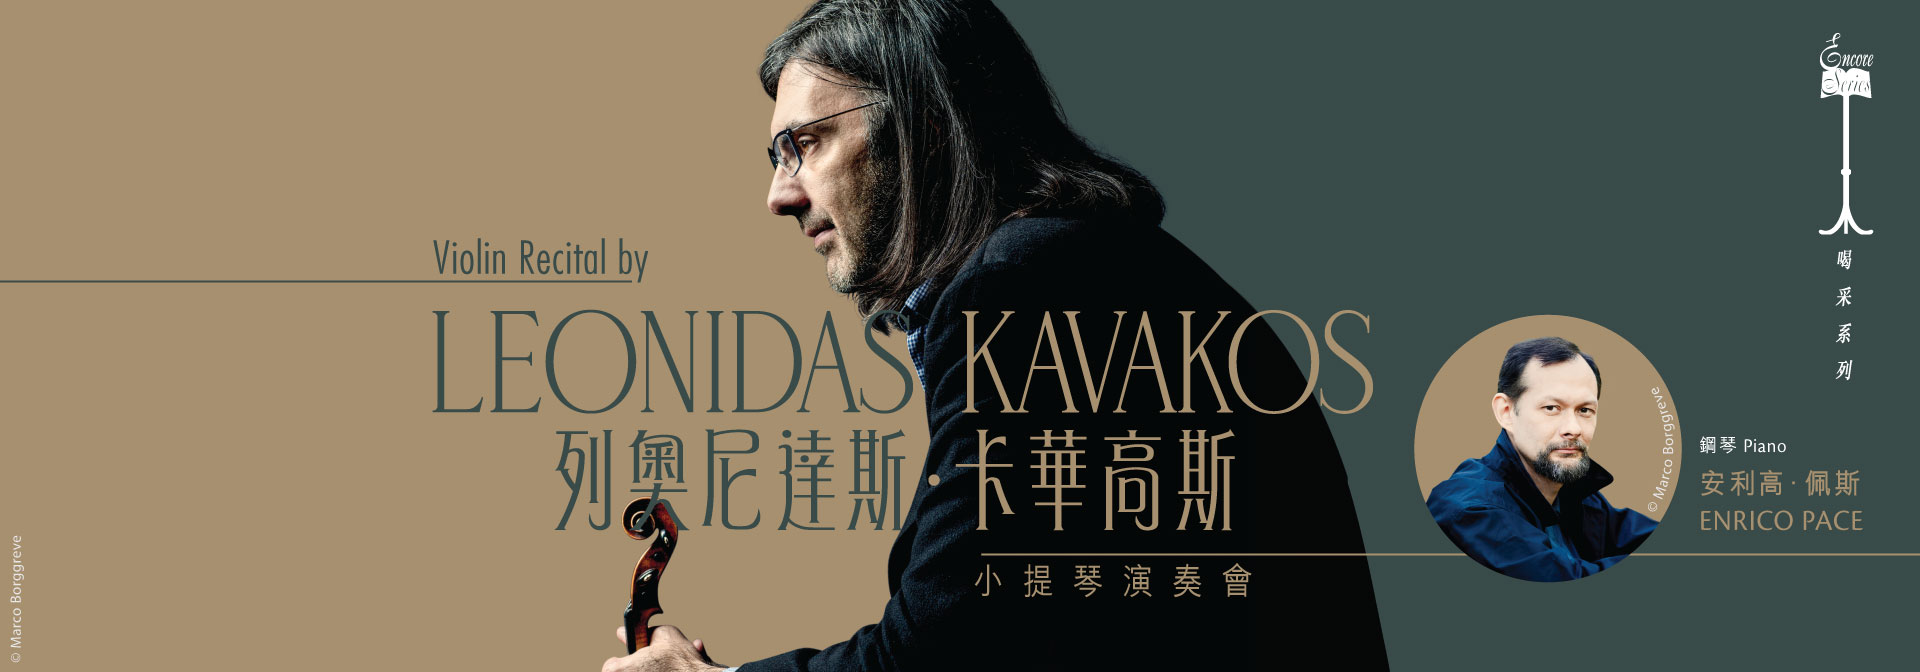 Encore Series: Violin Recital by Leonidas Kavakos